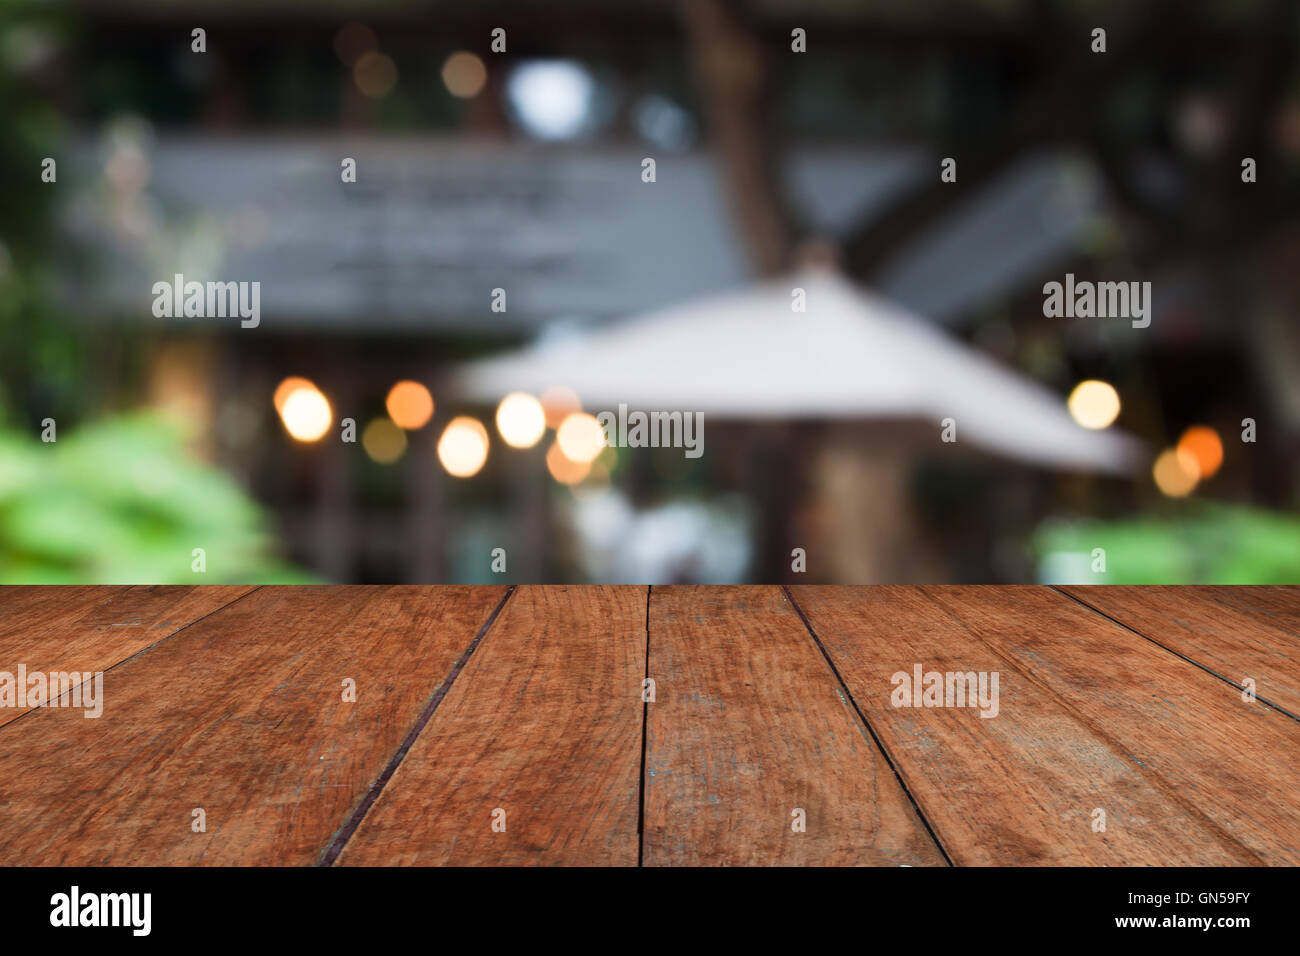 Haut de table en bois avec cafe blurred abstract background Banque D'Images